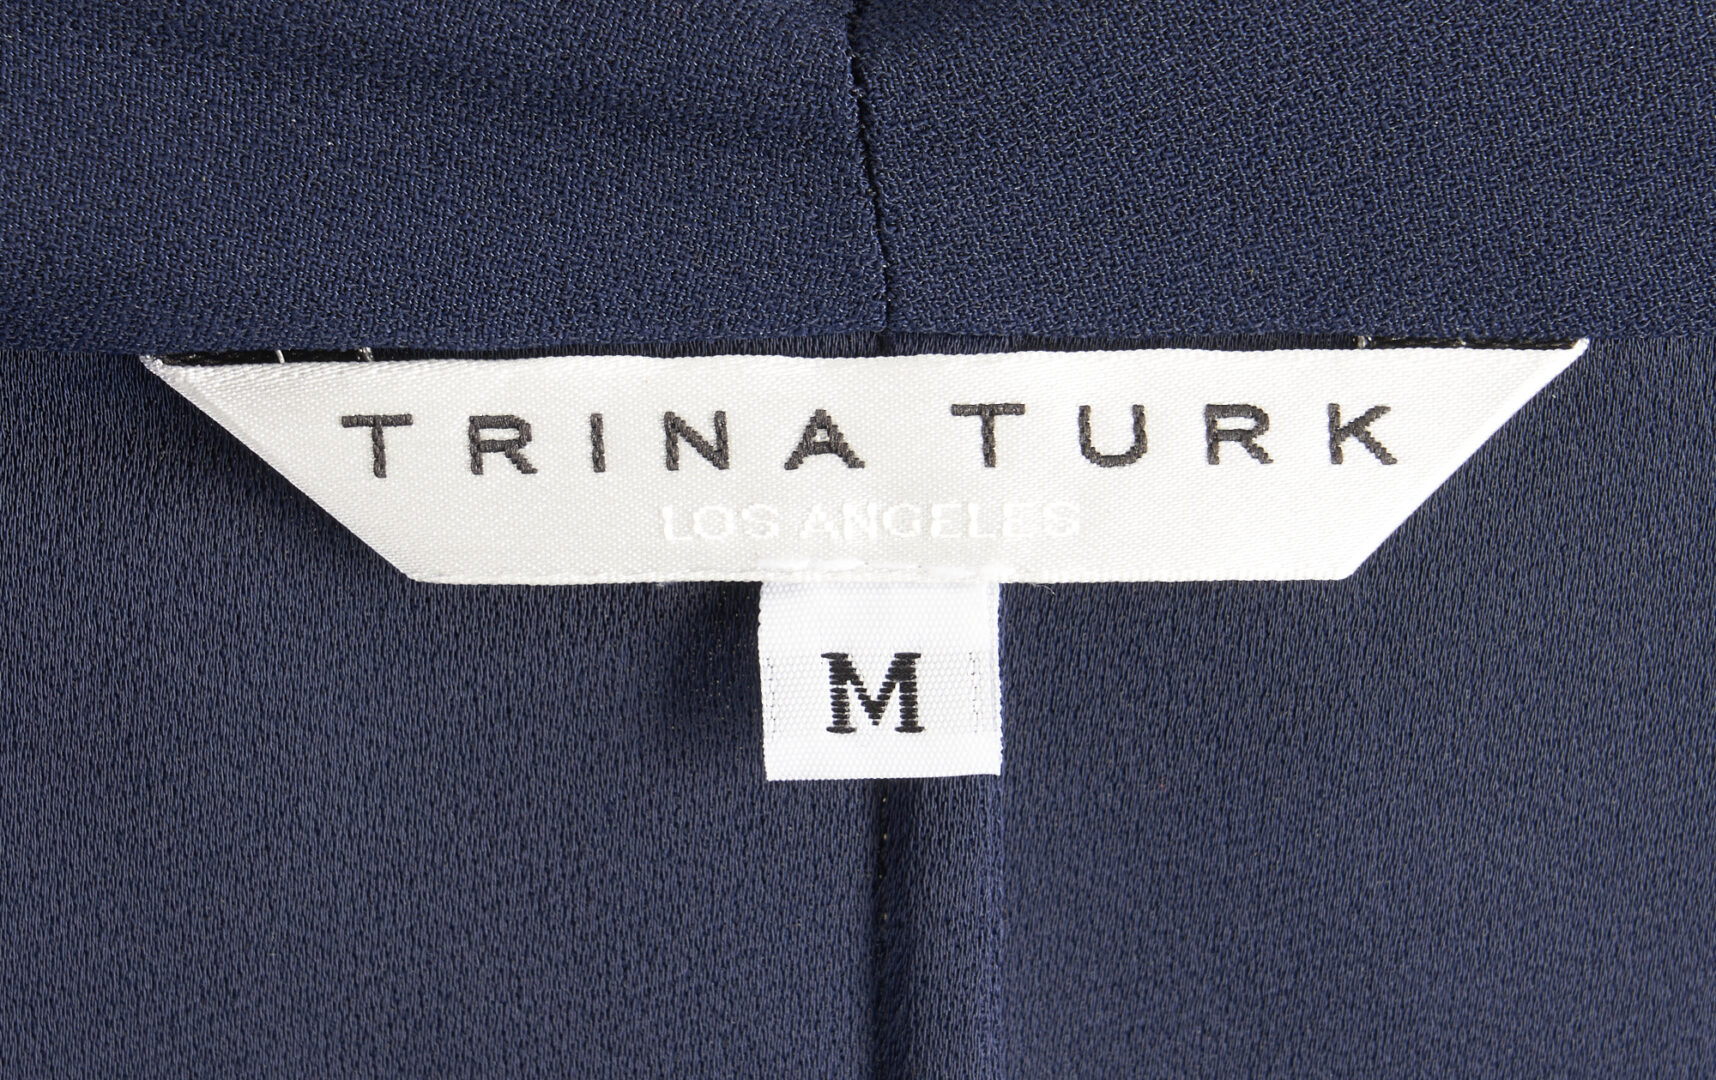 Lot 1257: 6 Trina Turk Garments, incl. Faux Fur